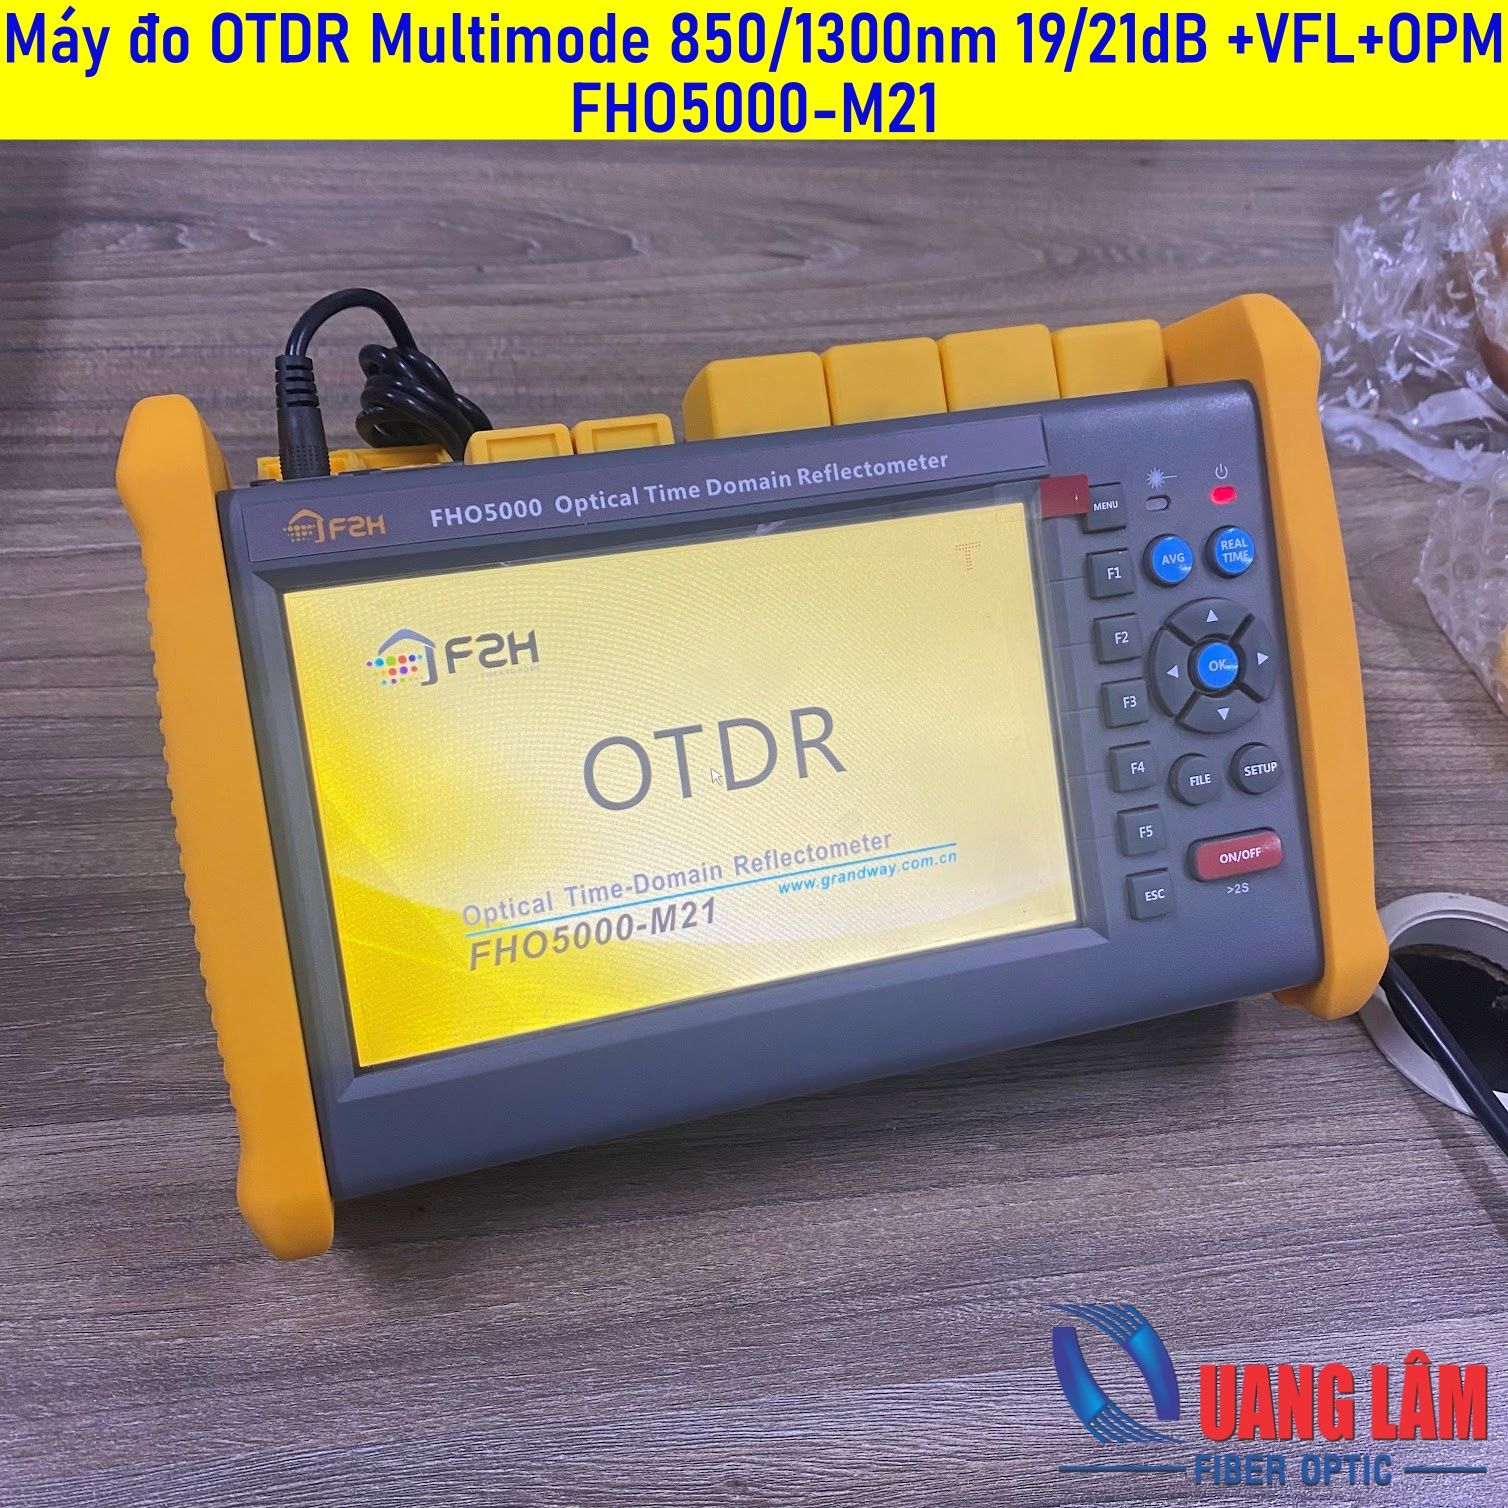 Máy đo OTDR Multimode 850/1300nm 19/21dB +VFL+OPM FHO5000-M21